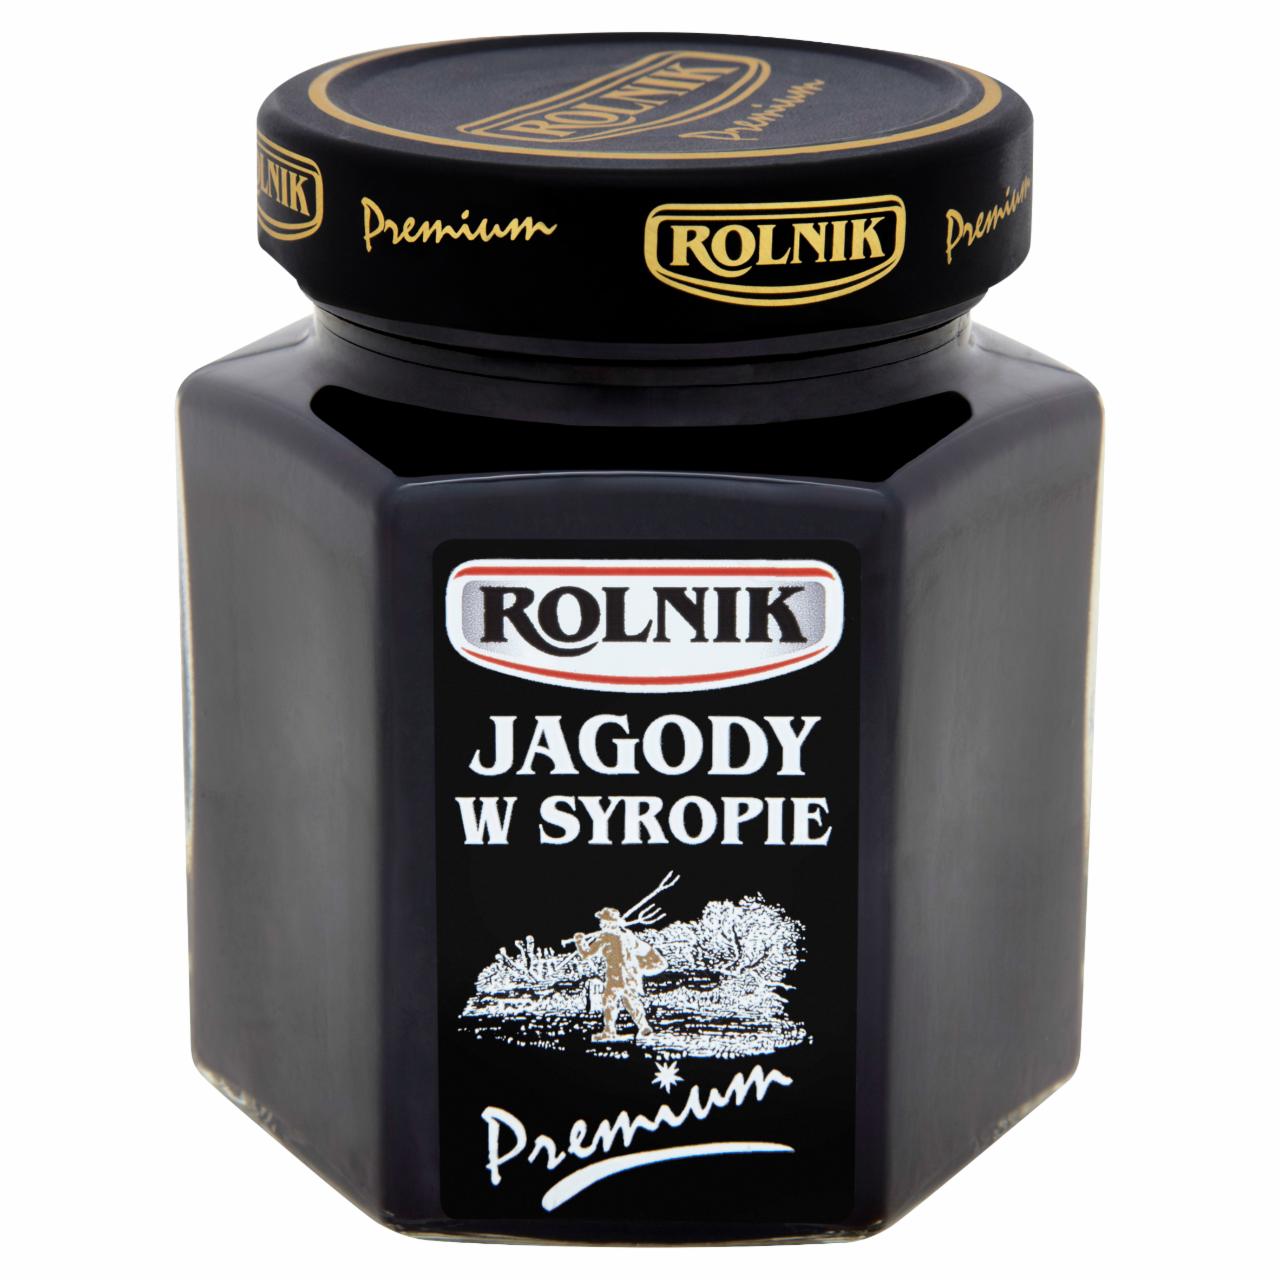 Zdjęcia - Rolnik Premium Jagody w syropie 320 g